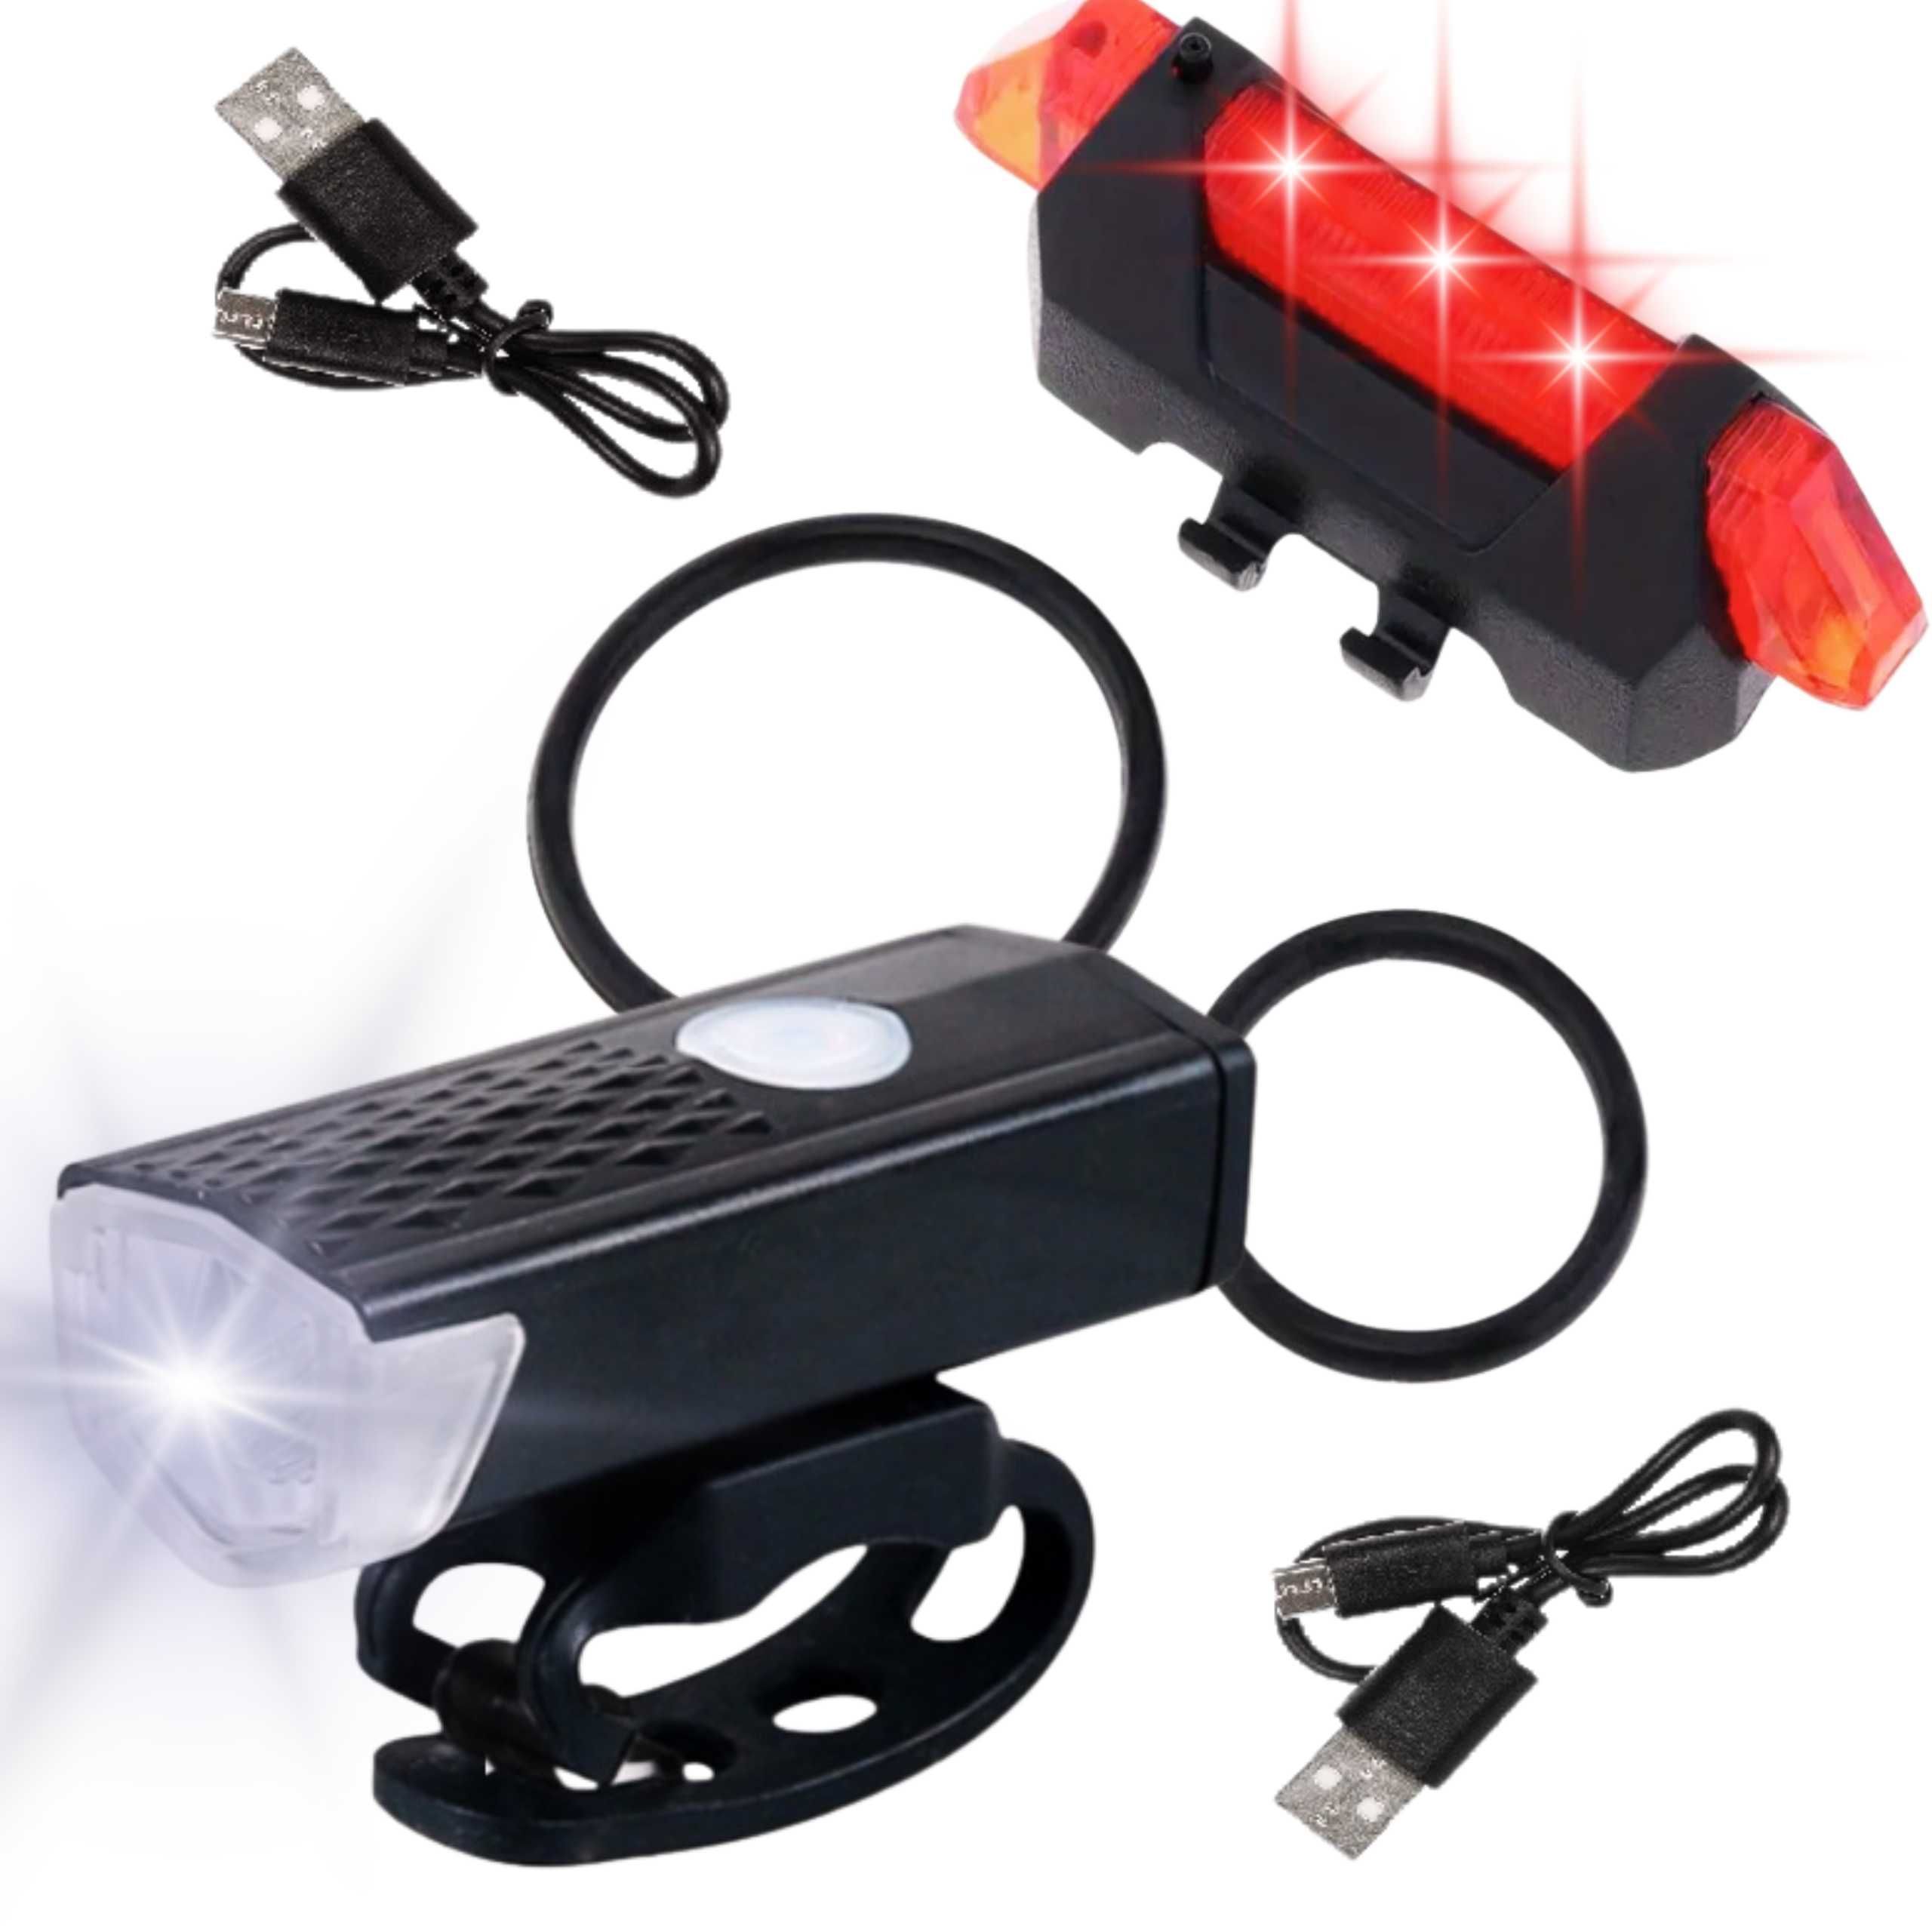 Lampka Rowerowa 2 sztuki Przód + Tył LED USB Zestaw Oświetlenie Rower